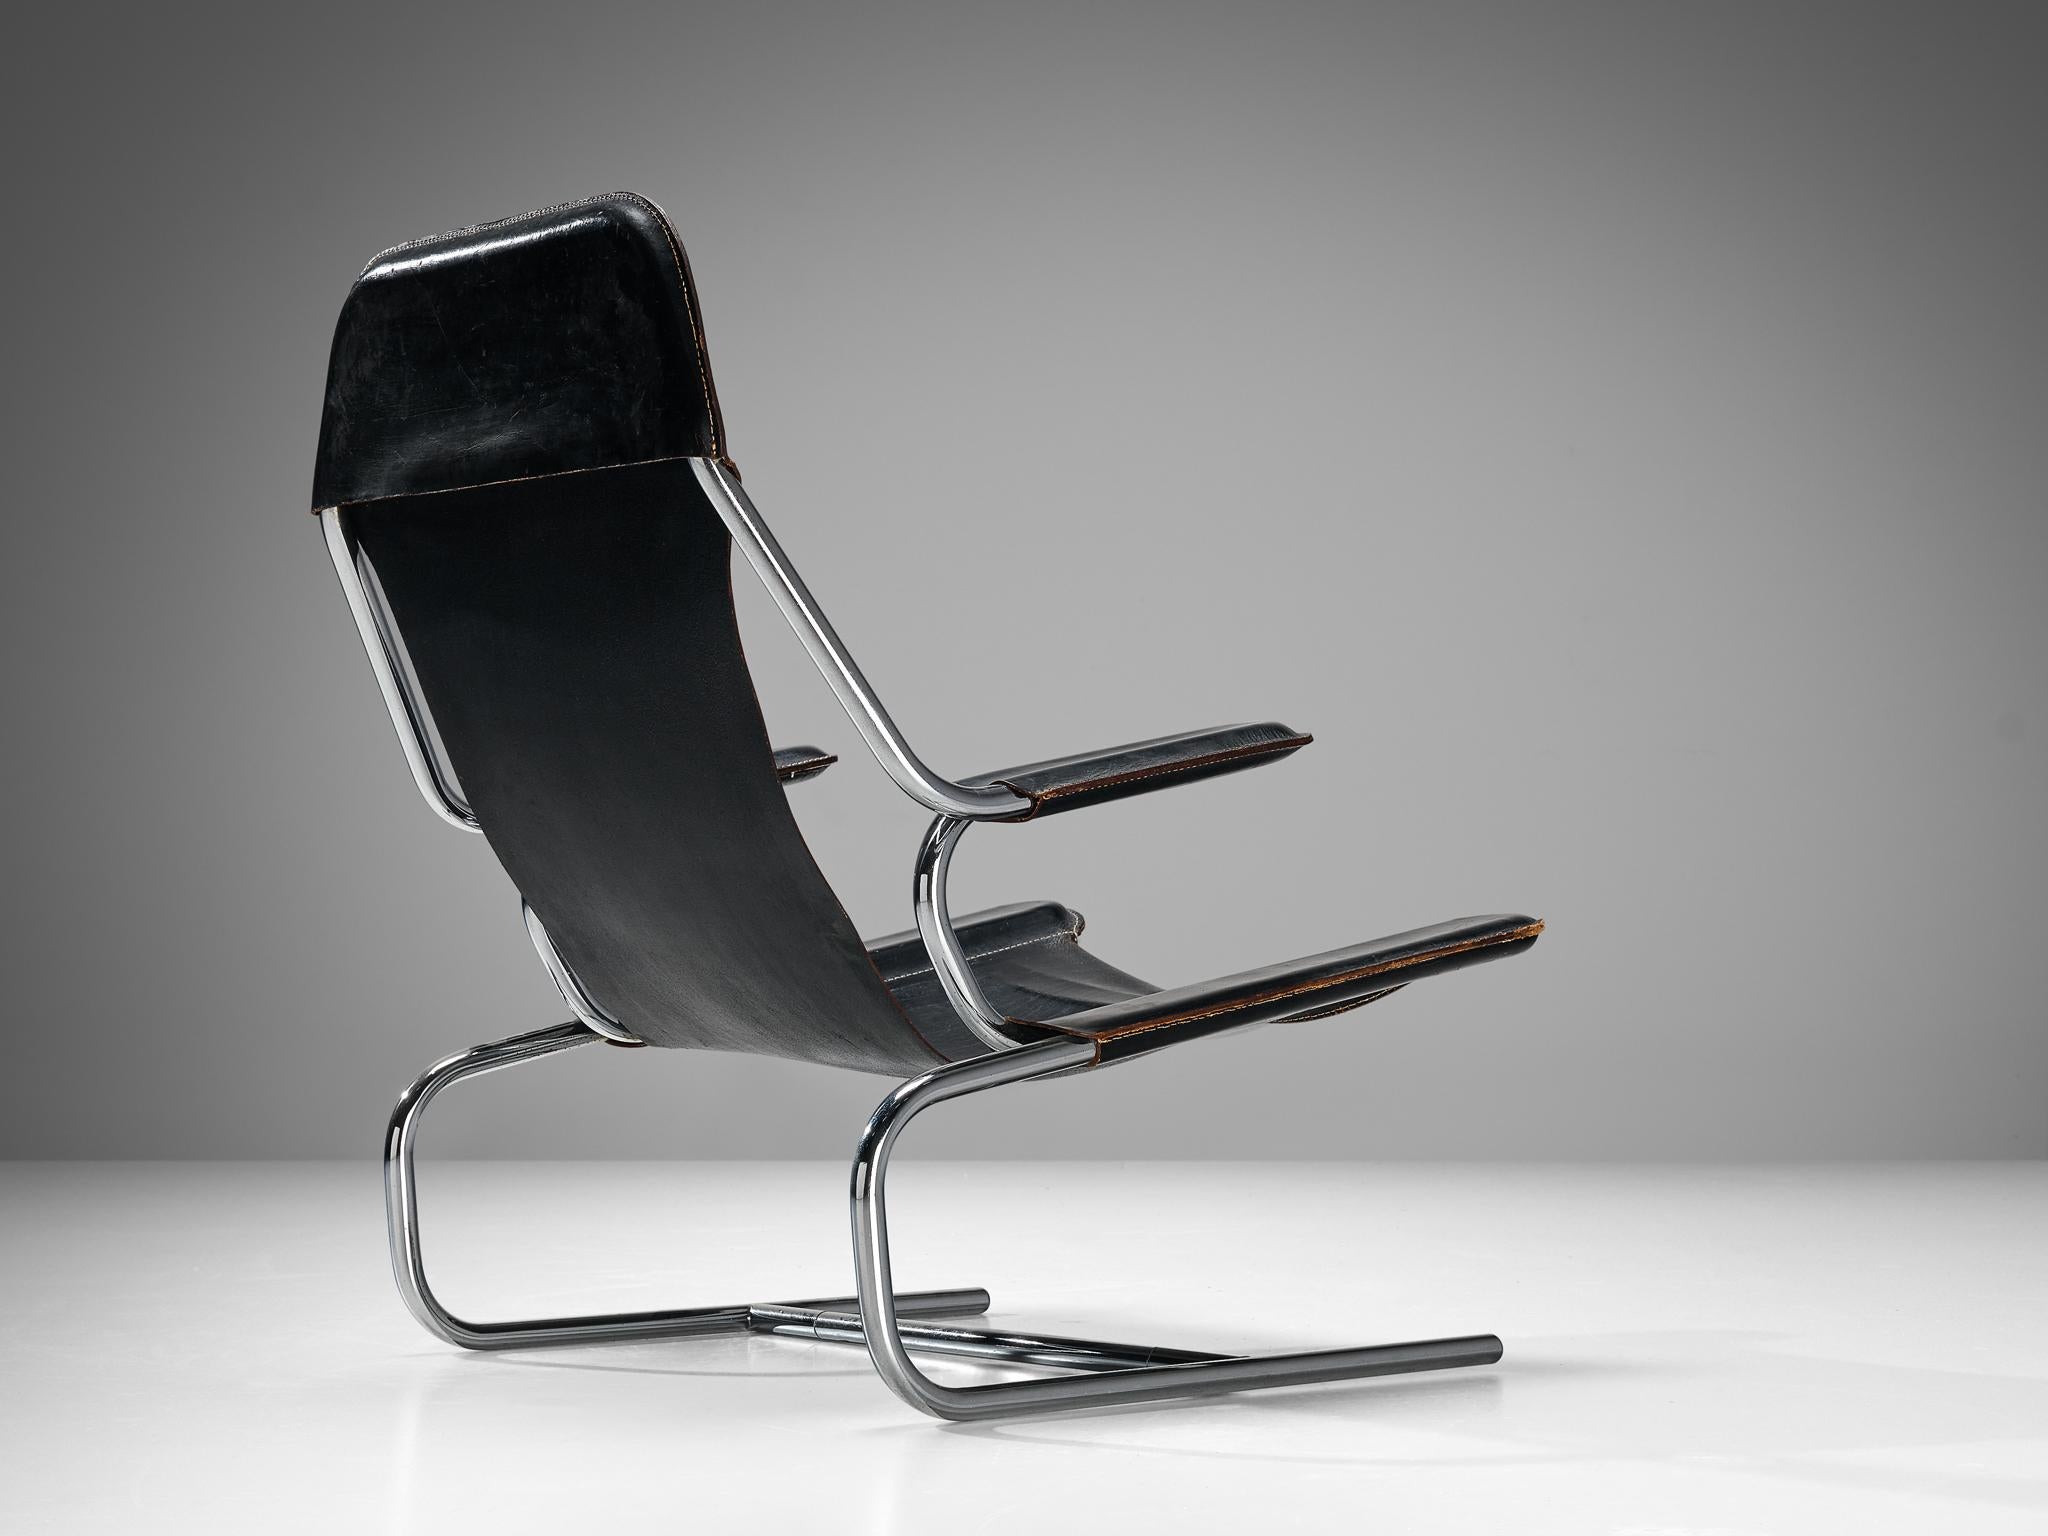 Chaise longue en acier et cuir, Europe, années 1950.

Fauteuil moderne fabriqué en Europe dans les années 1950. Cette chaise est fabriquée en acier tubulaire plié avec un revêtement en cuir sellier noir. De belles lignes courbes se combinent dans un